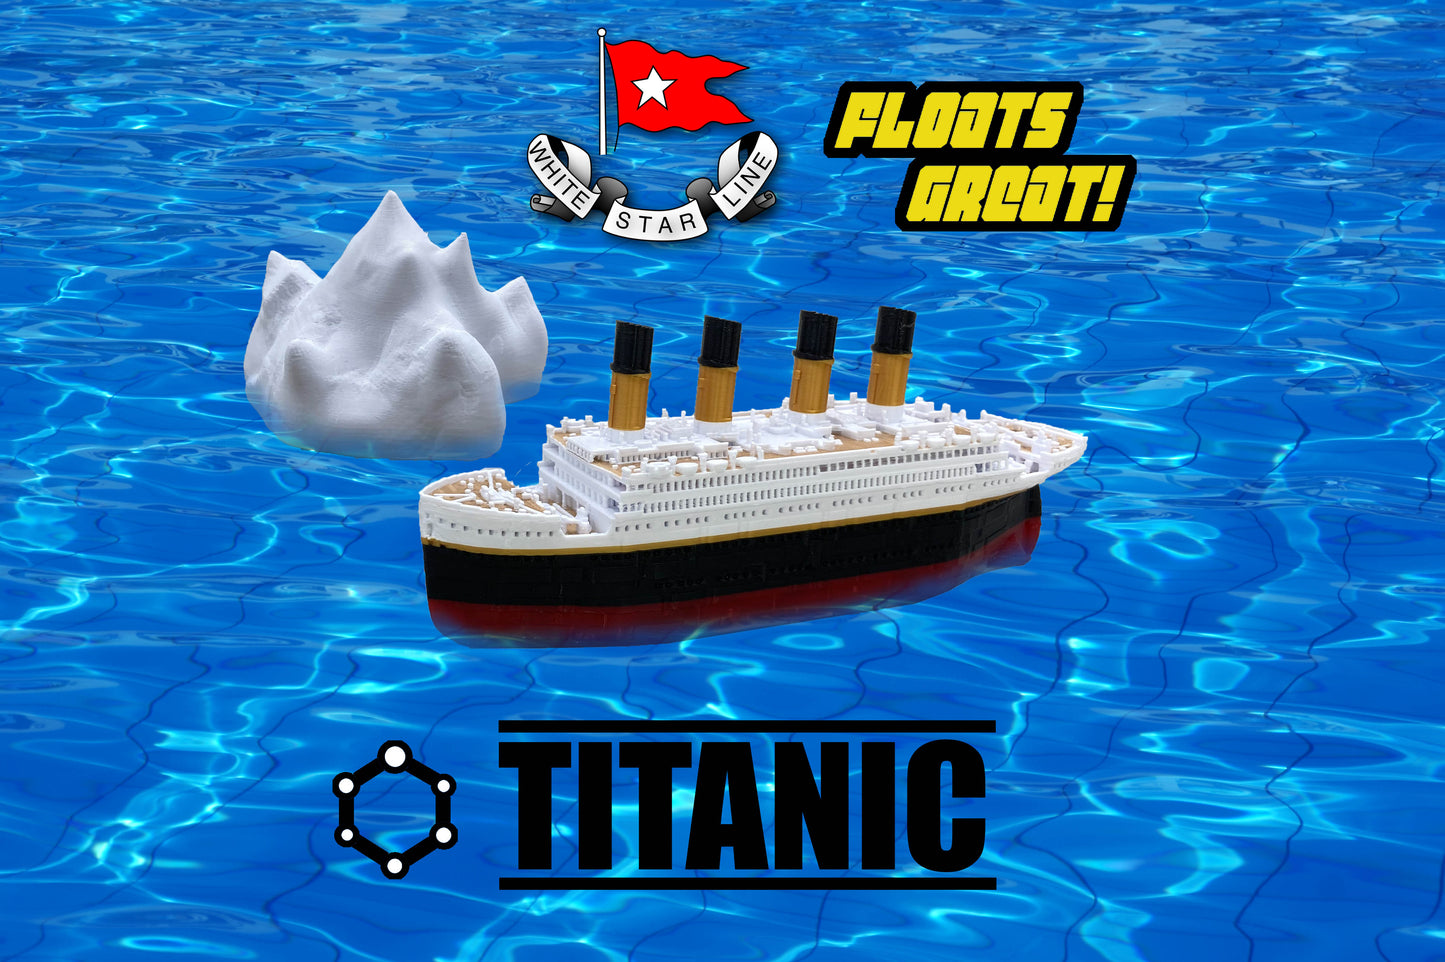 Floating Titanic Model With Iceberg-Bath toy